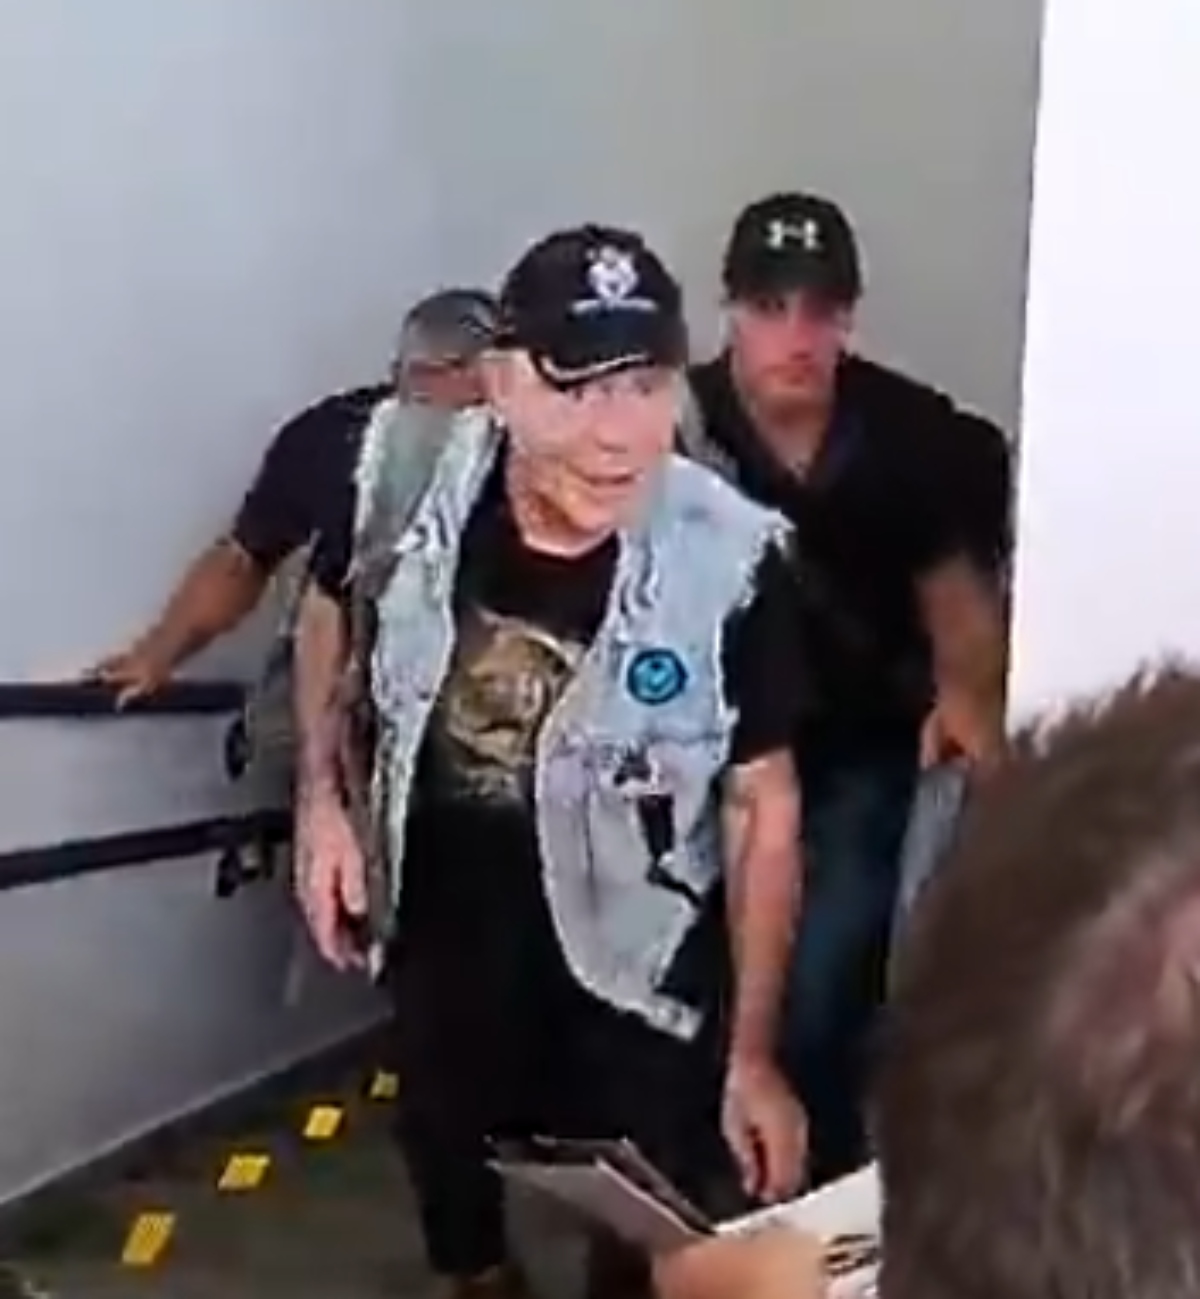 Bruce Dickinson, do Iron Maiden, participa de duelo de esgrima em Curitiba